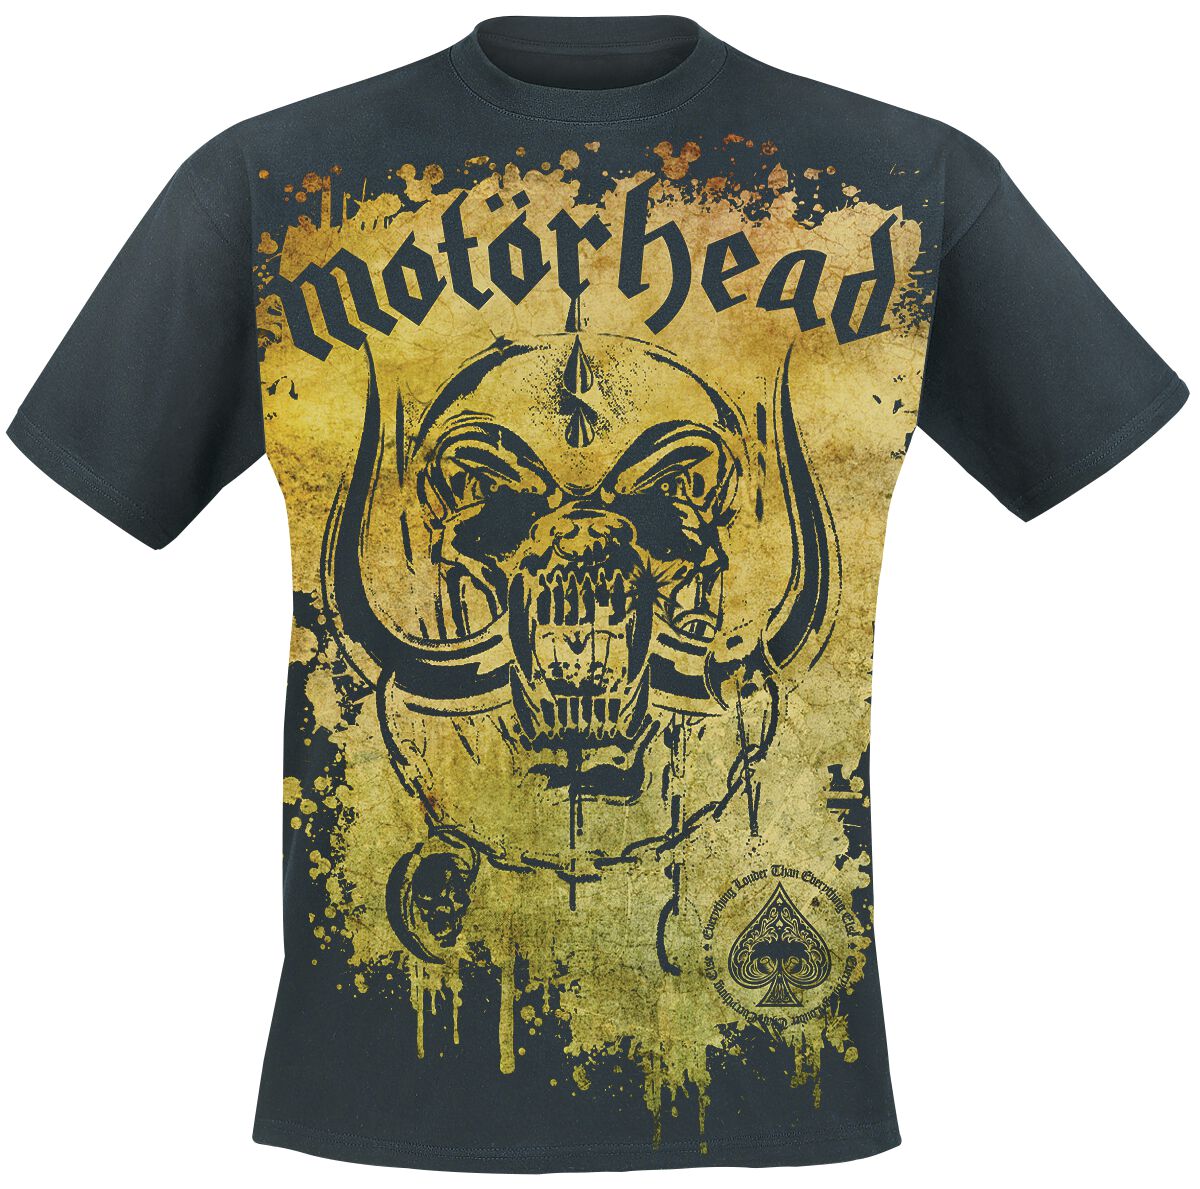 Motörhead T-Shirt - Acid Splatter - M bis 3XL - für Männer - Größe L - schwarz  - Lizenziertes Merchandise!